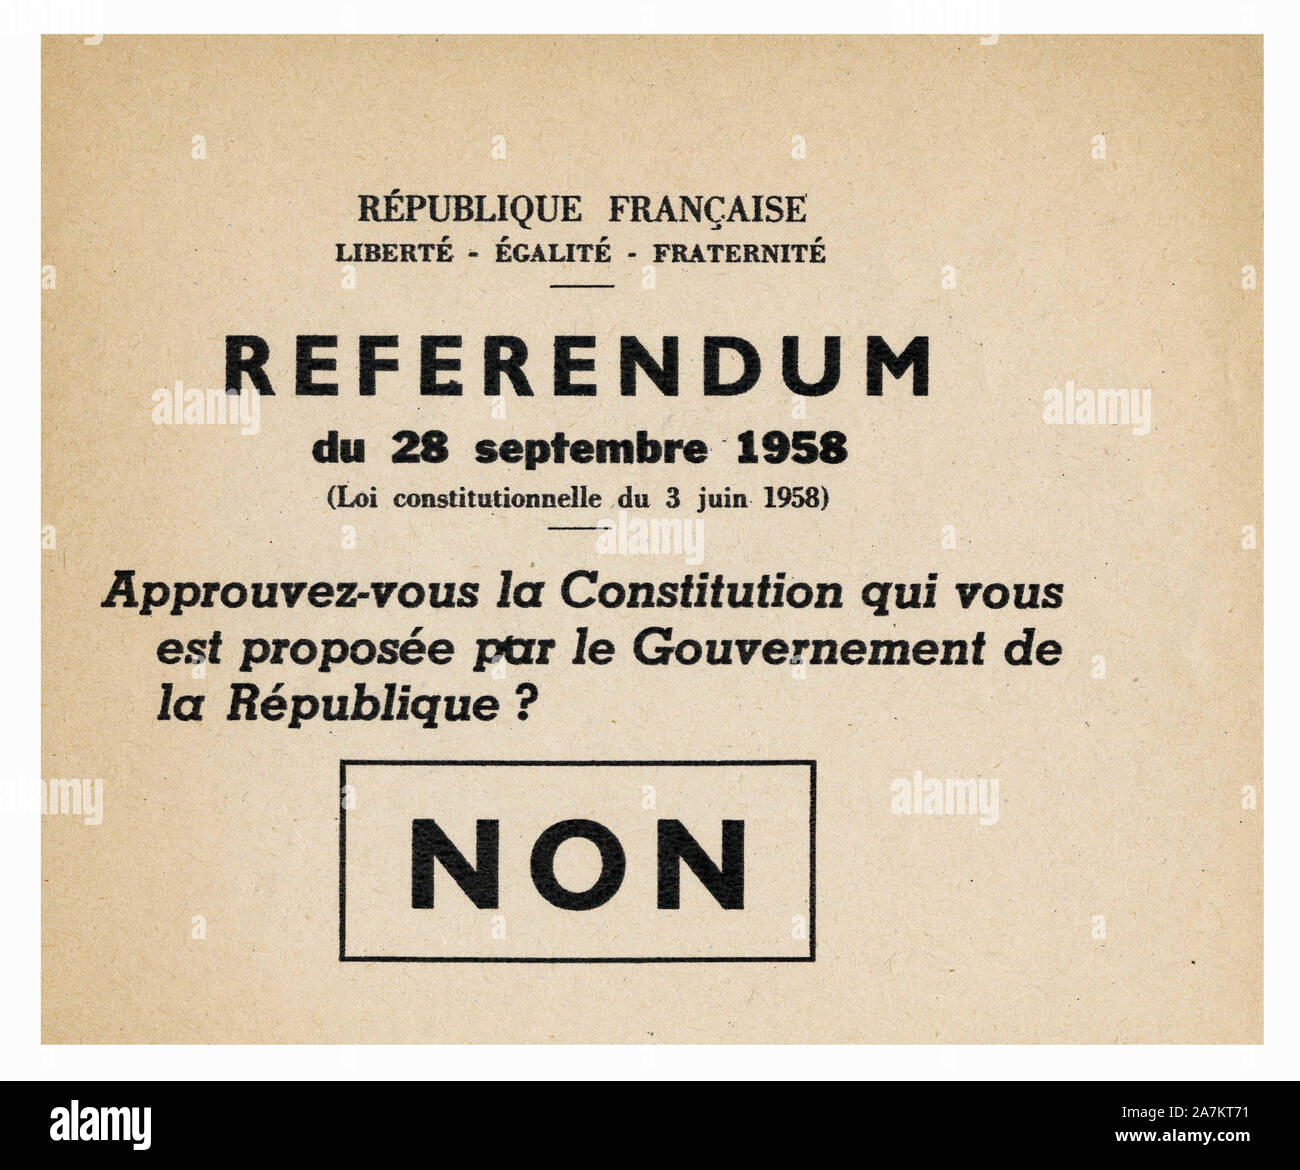 Bulletin de vote 'Non', pour le referendum du 28 septembre 1958, pour une nouvelle Constitution, proposee par le general Charles de Gaulle. Stock Photo